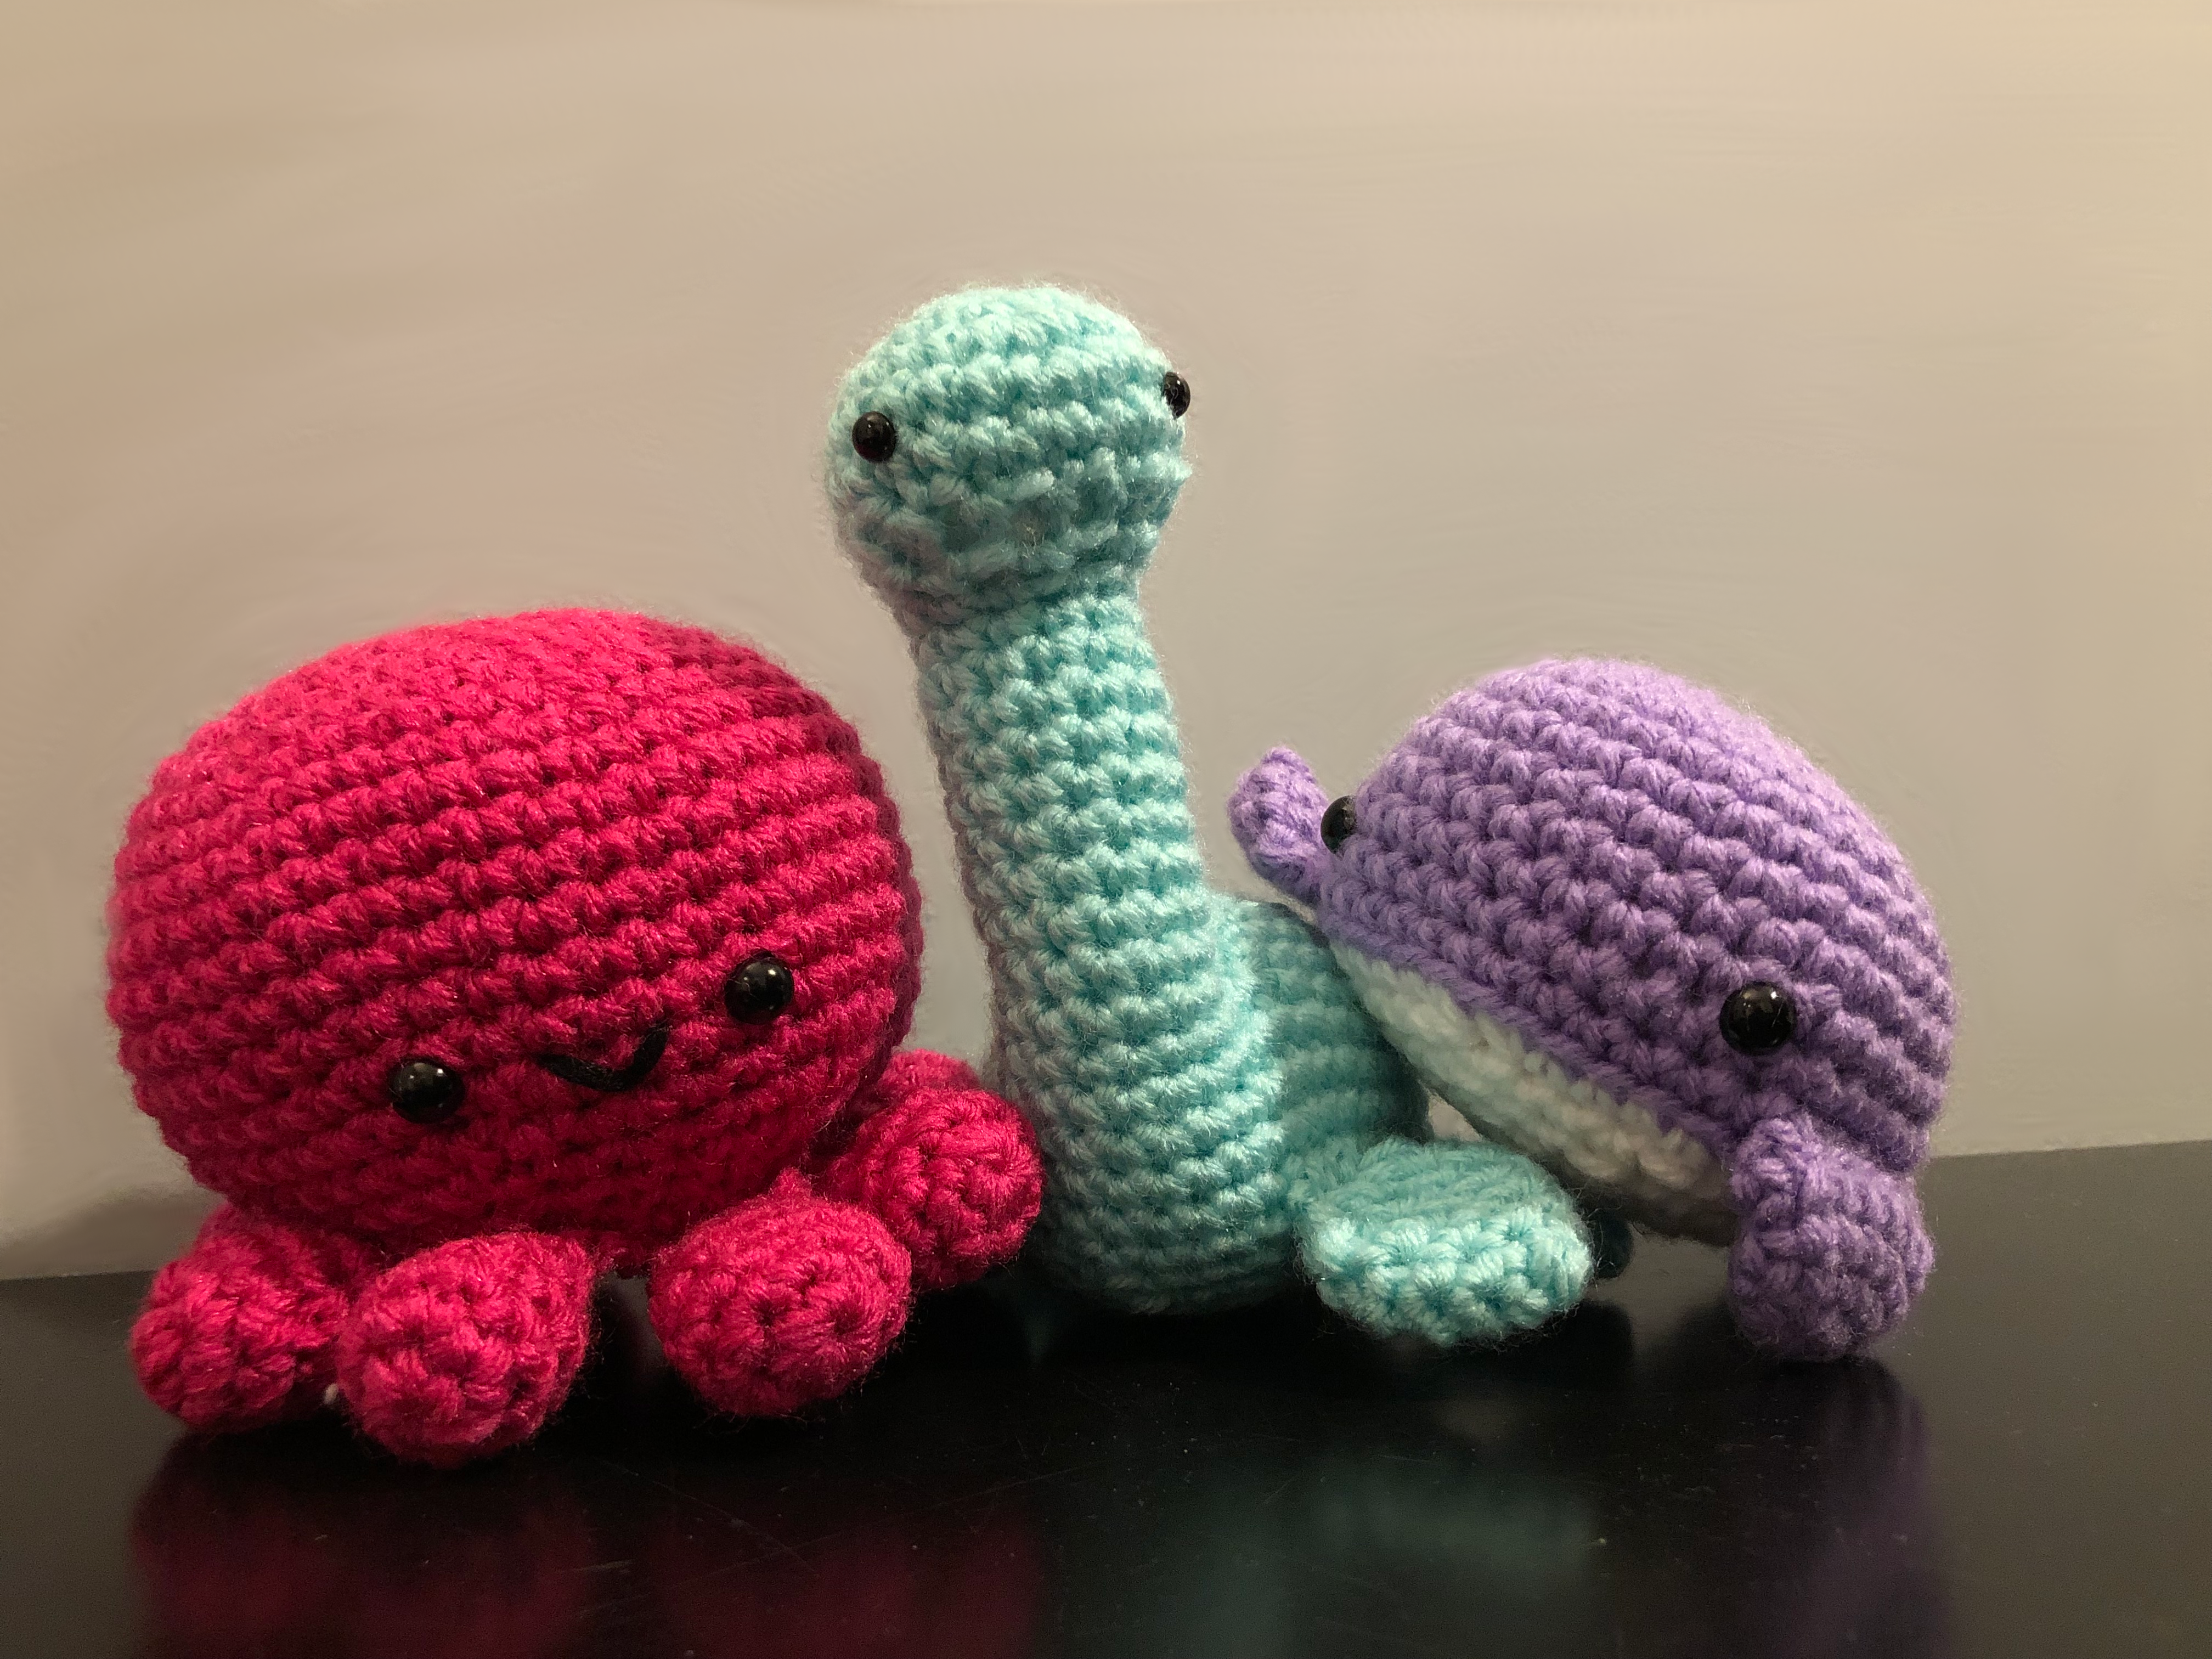 Amigurumis? A Cute Way to Crochet!